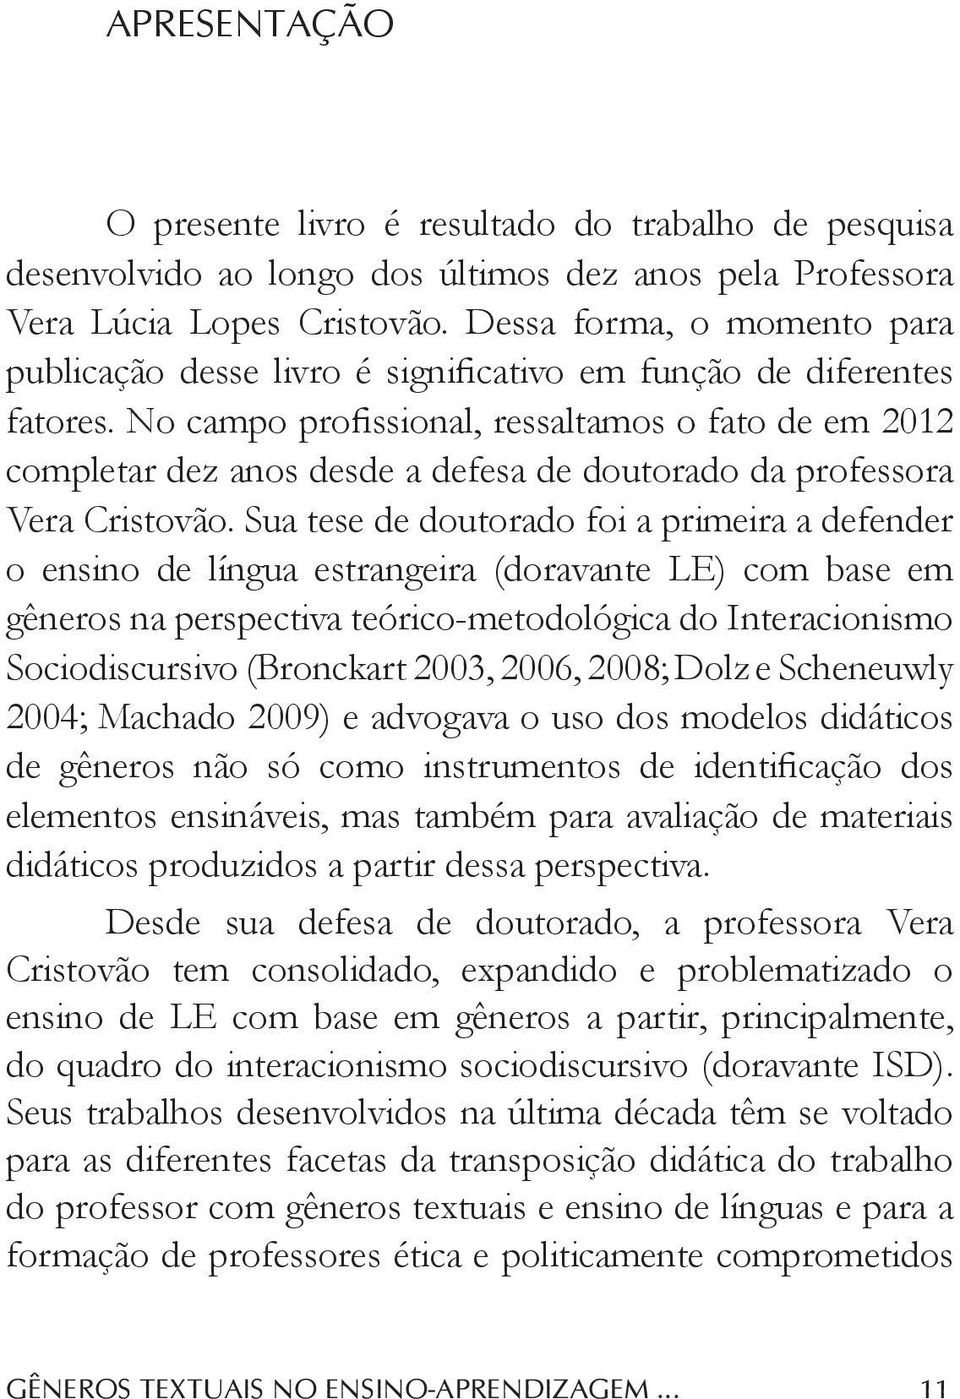 No campo profissional, ressaltamos o fato de em 2012 completar dez anos desde a defesa de doutorado da professora Vera Cristovão.